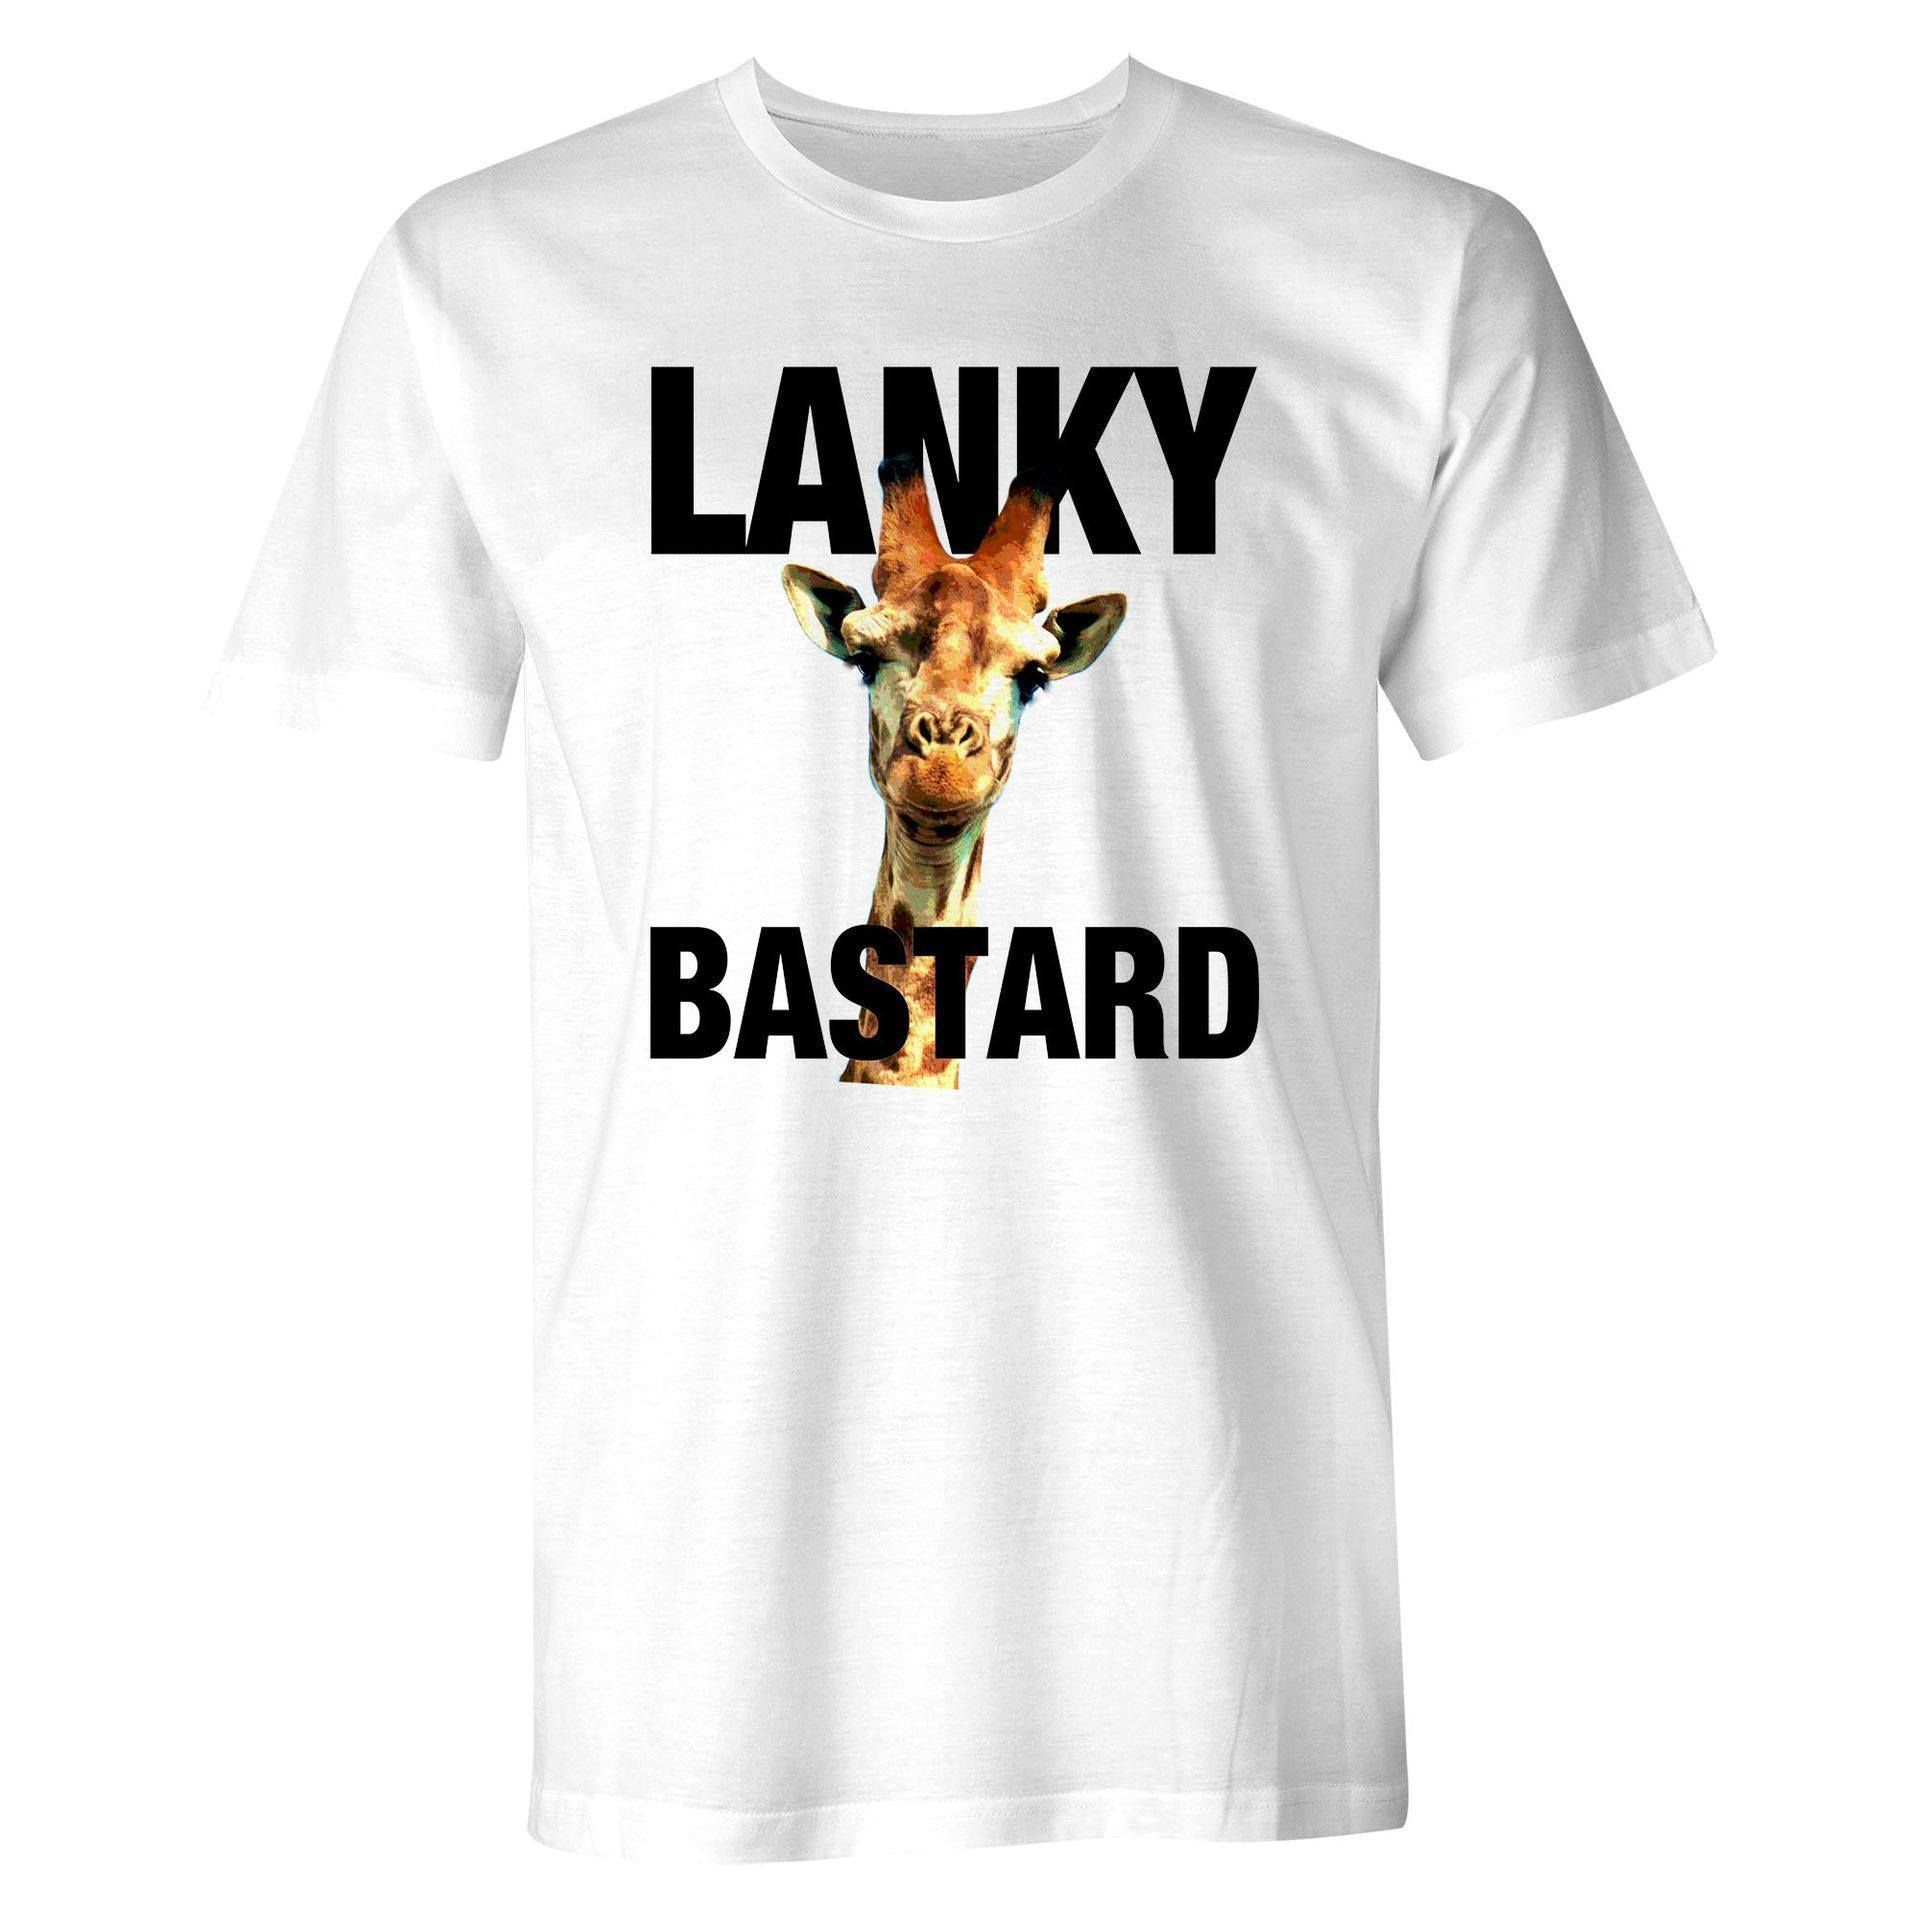 Lanky bastard - Girrafe